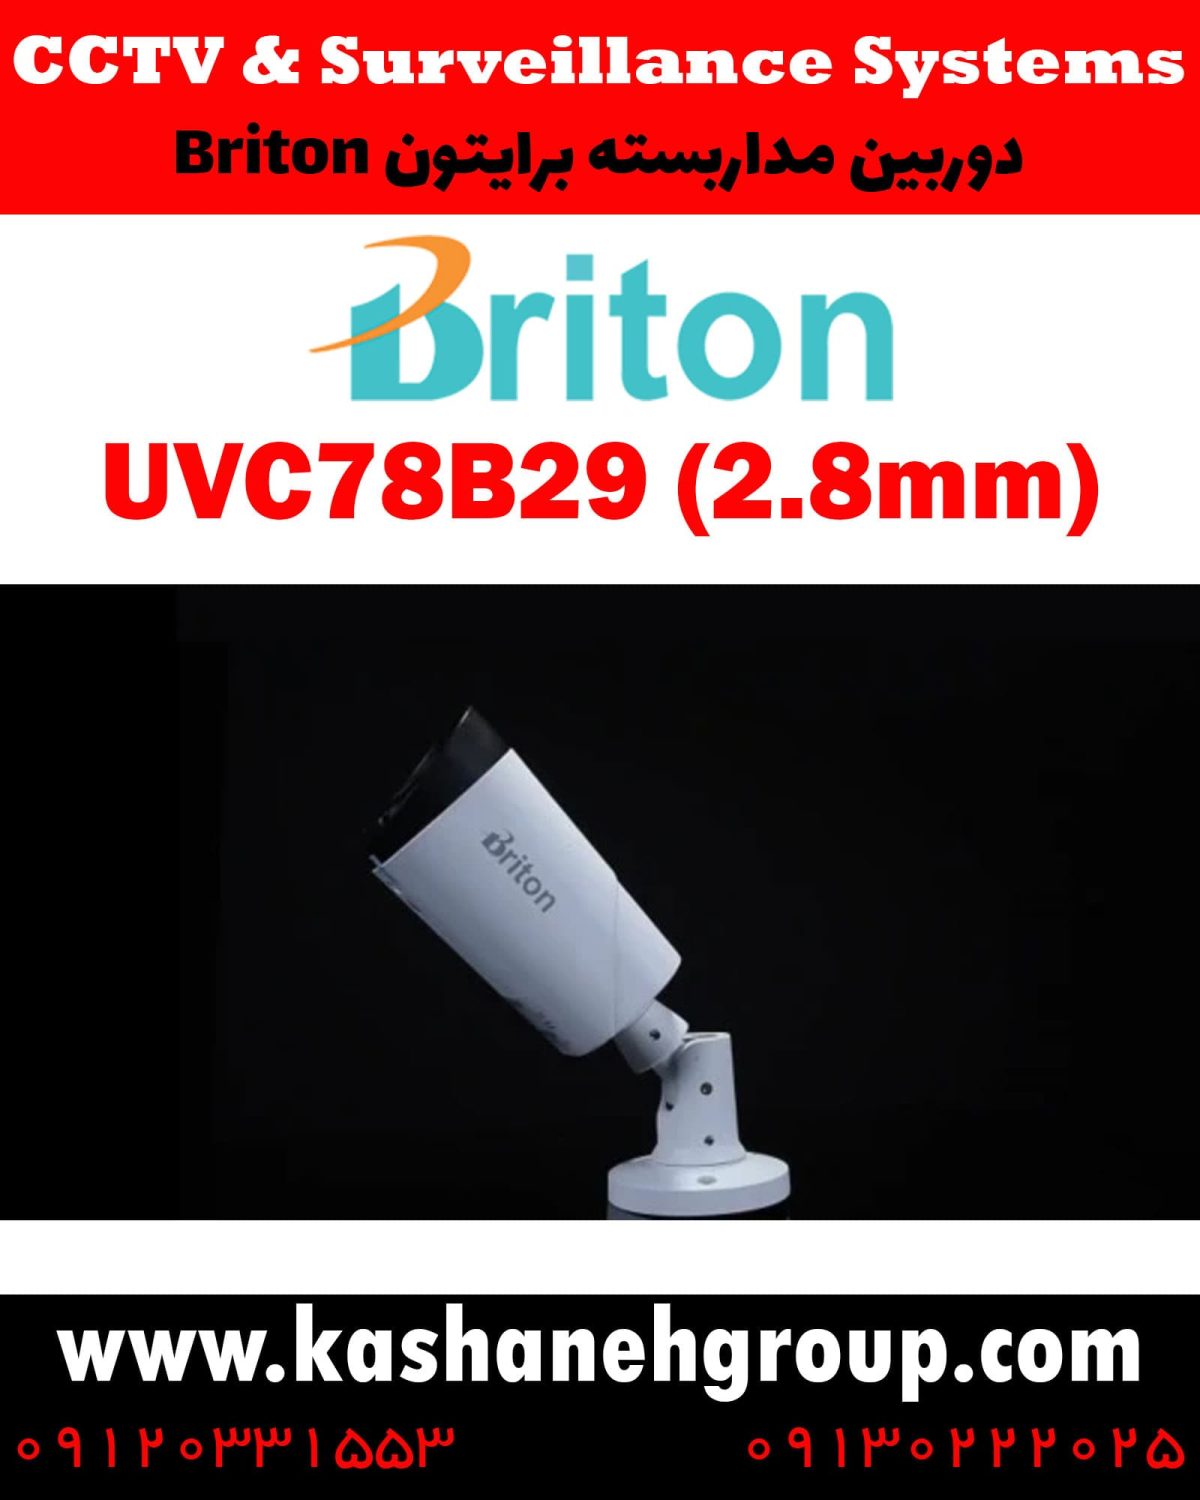 دوربین مداربسته UVC78B29(2.8MM)، دوربین مداربسته برایتون UVC78B29(2.8MM)، دوربین مداربسته Briton UVC78B29(2.8MM)، دوربین برایتون UVC78B29(2.8MM)، قیمت دوربین برایتون، نرم افزار برایتون، تعمیر دوربین برایتون، نمایندگی برایتون، نماینده برایتون، قیمت دوربین برایتون، مشخصات دوربین UVC78B29(2.8MM)، قیمت دوربین برایتون UVC78B29(2.8MM)، قیمت دوربین UVC78B29(2.8MM) برایتون، پک دوربین برایتون، پک دوربین مداربسته برایتون، دوربین Briton، دوربین مداربسته برایتون Briton UVC78B29(2.8MM) ، نماینده دوربین Briton، نمایندگی دوربین Briton، نرم افزار موبایل دوربین مداربسته Briton